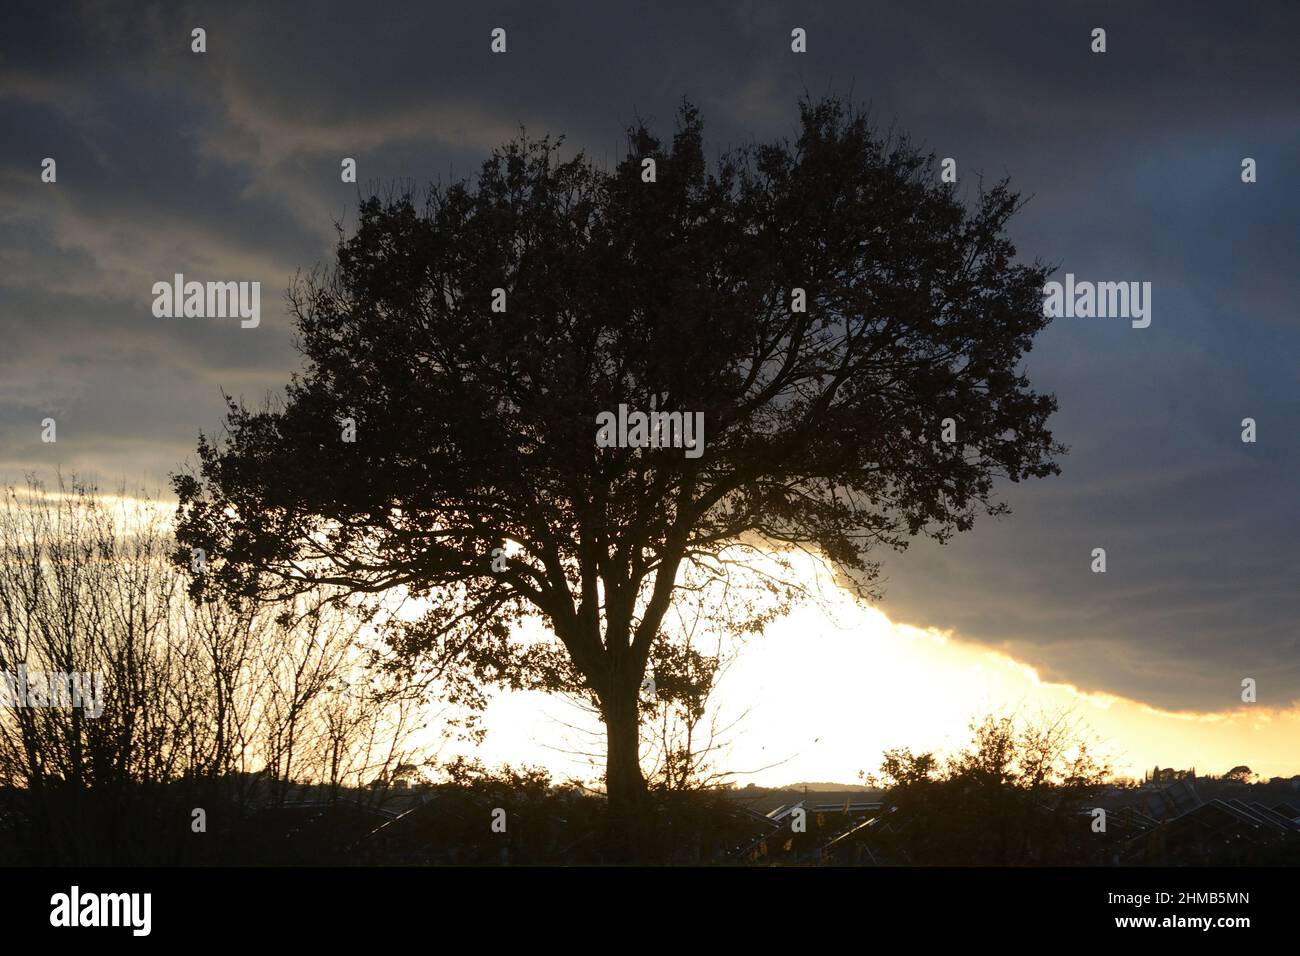 Photo de la silhouette de l'arbre, campagne. Coucher de soleil rural Banque D'Images